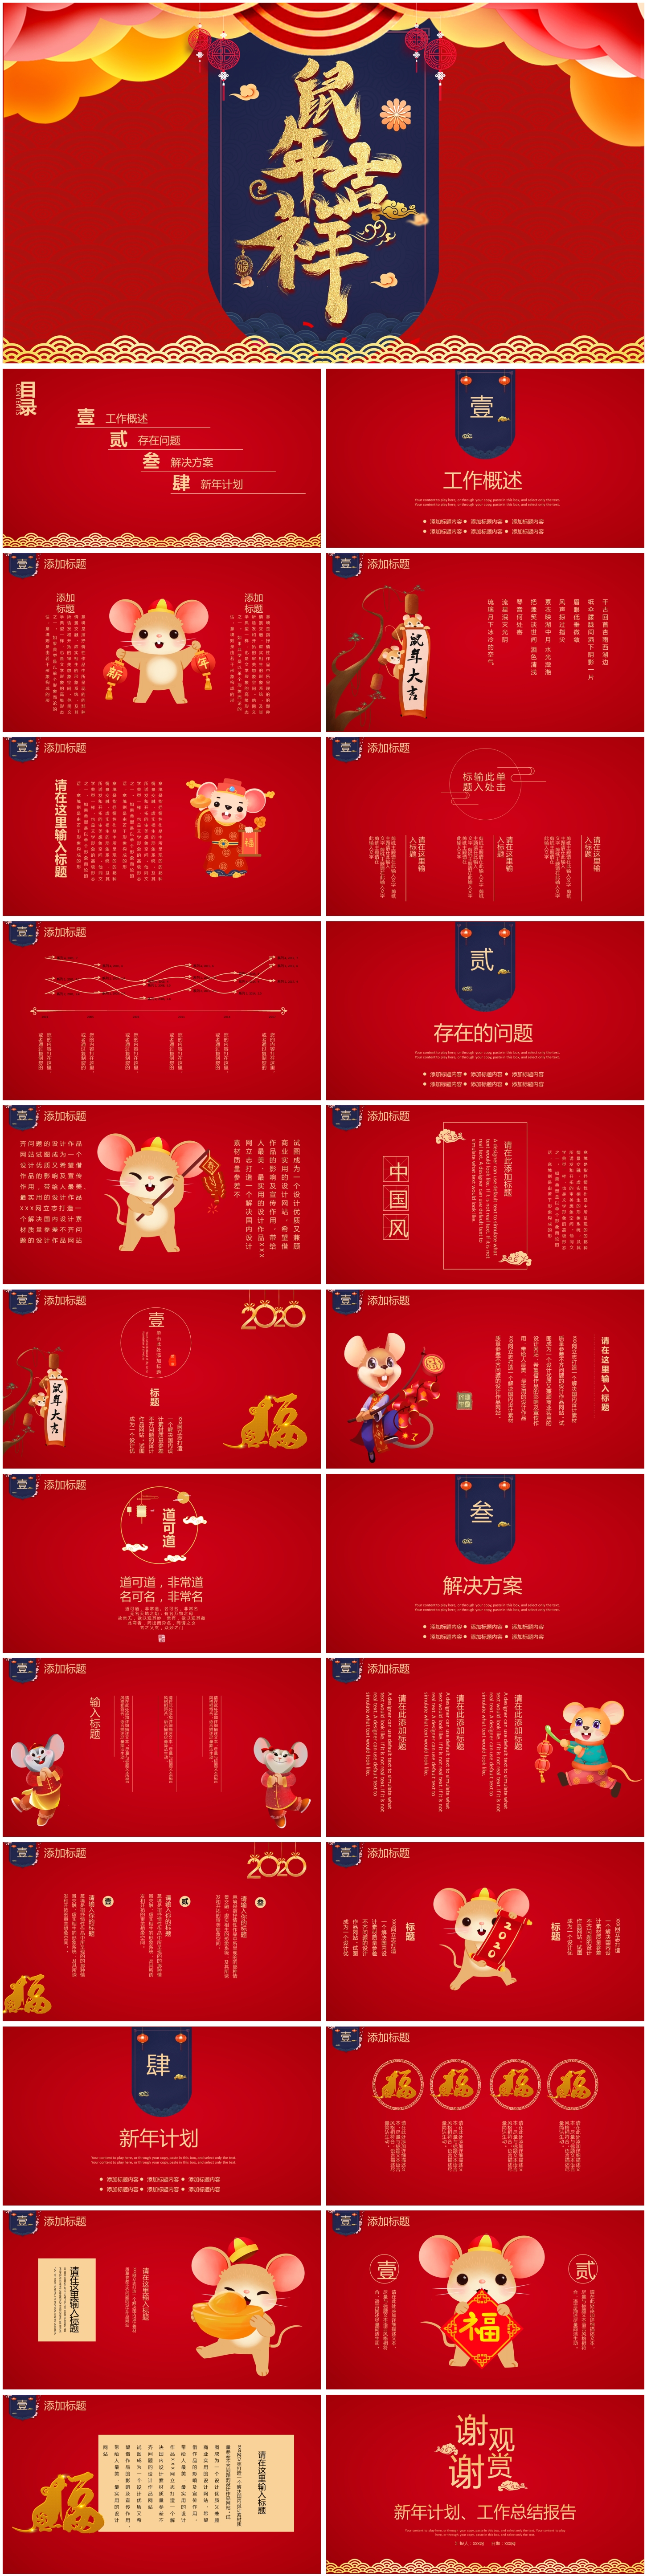 红色大气鼠年吉祥年节日庆典传统动态幻灯片PPT下载